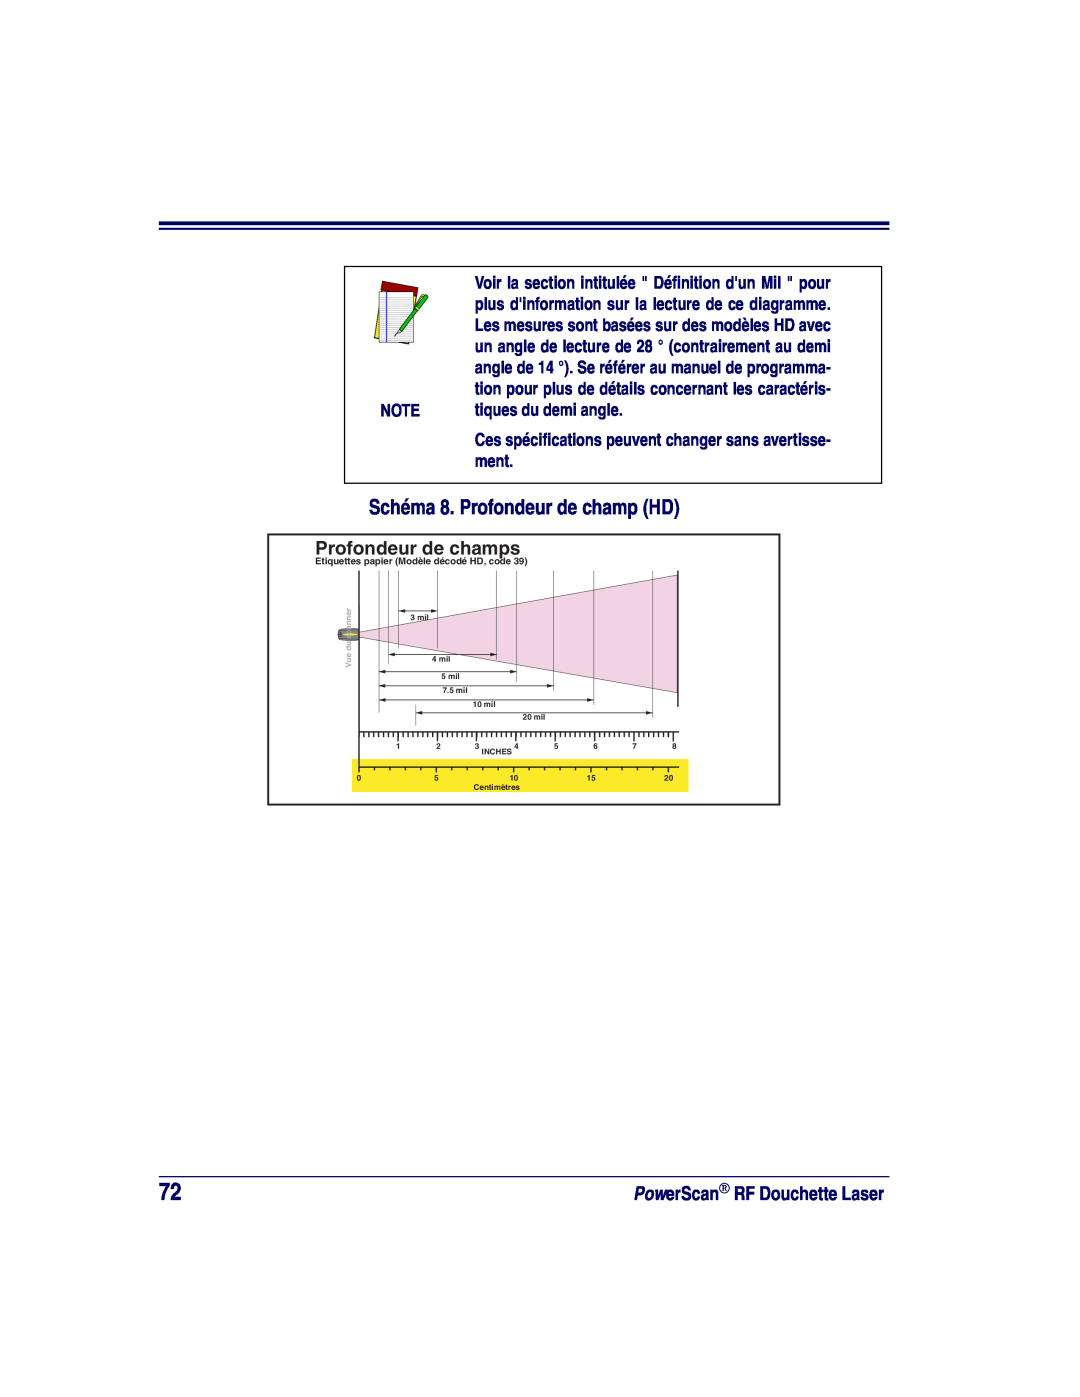 Datalogic Scanning SR, XLR manual Schéma 8. Profondeur de champ HD, Profondeur de champs, tiques du demi angle 